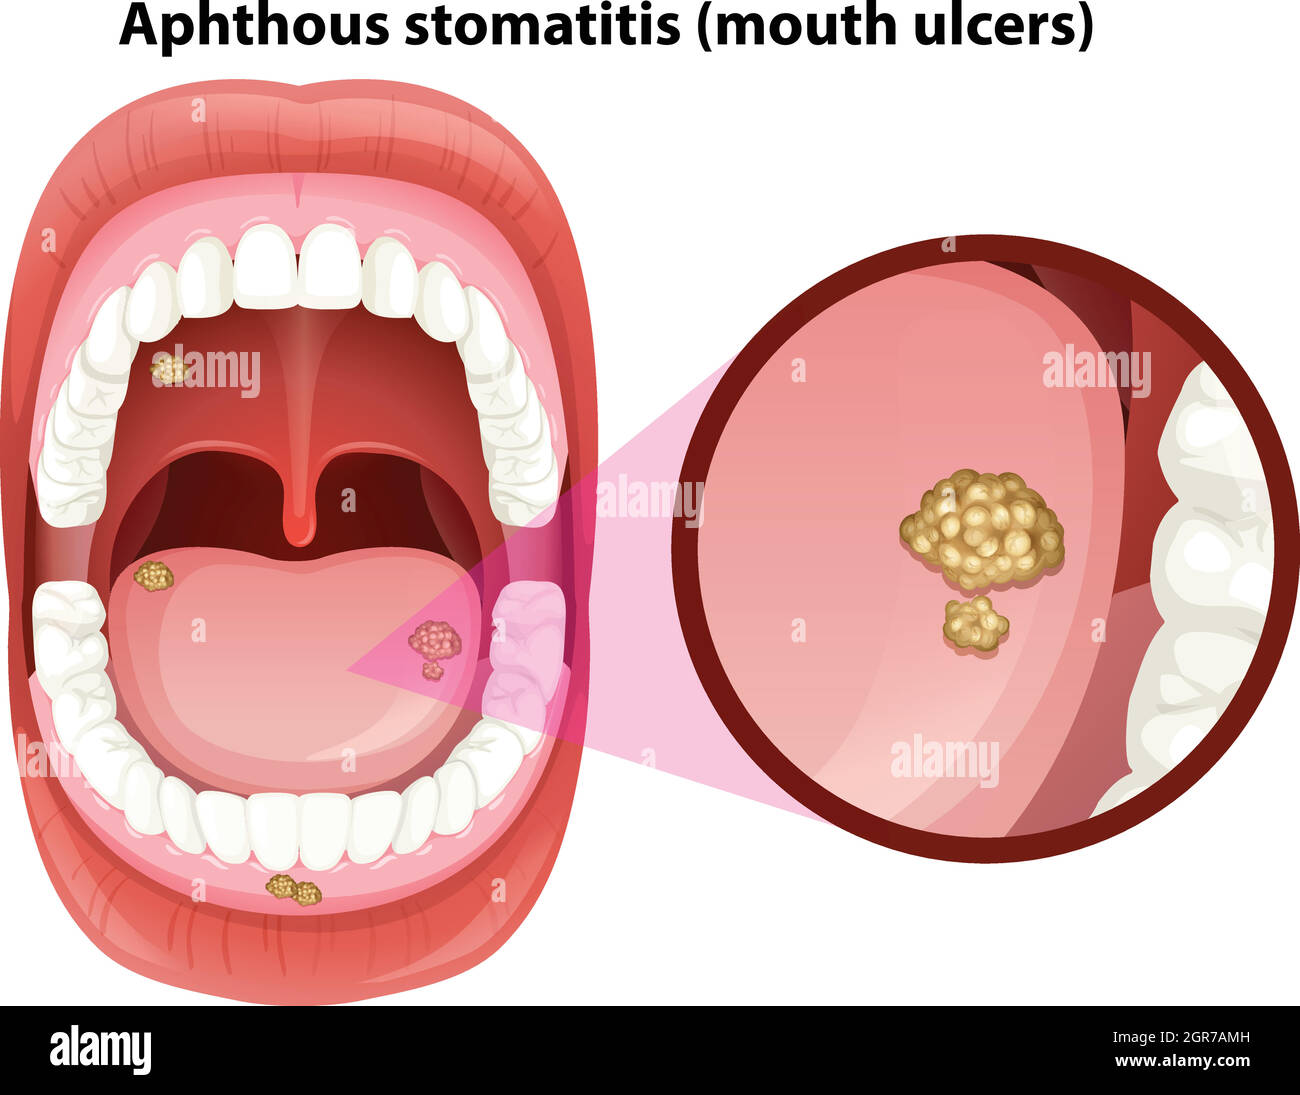 Anatomia della bocca umana delle ulcere Illustrazione Vettoriale